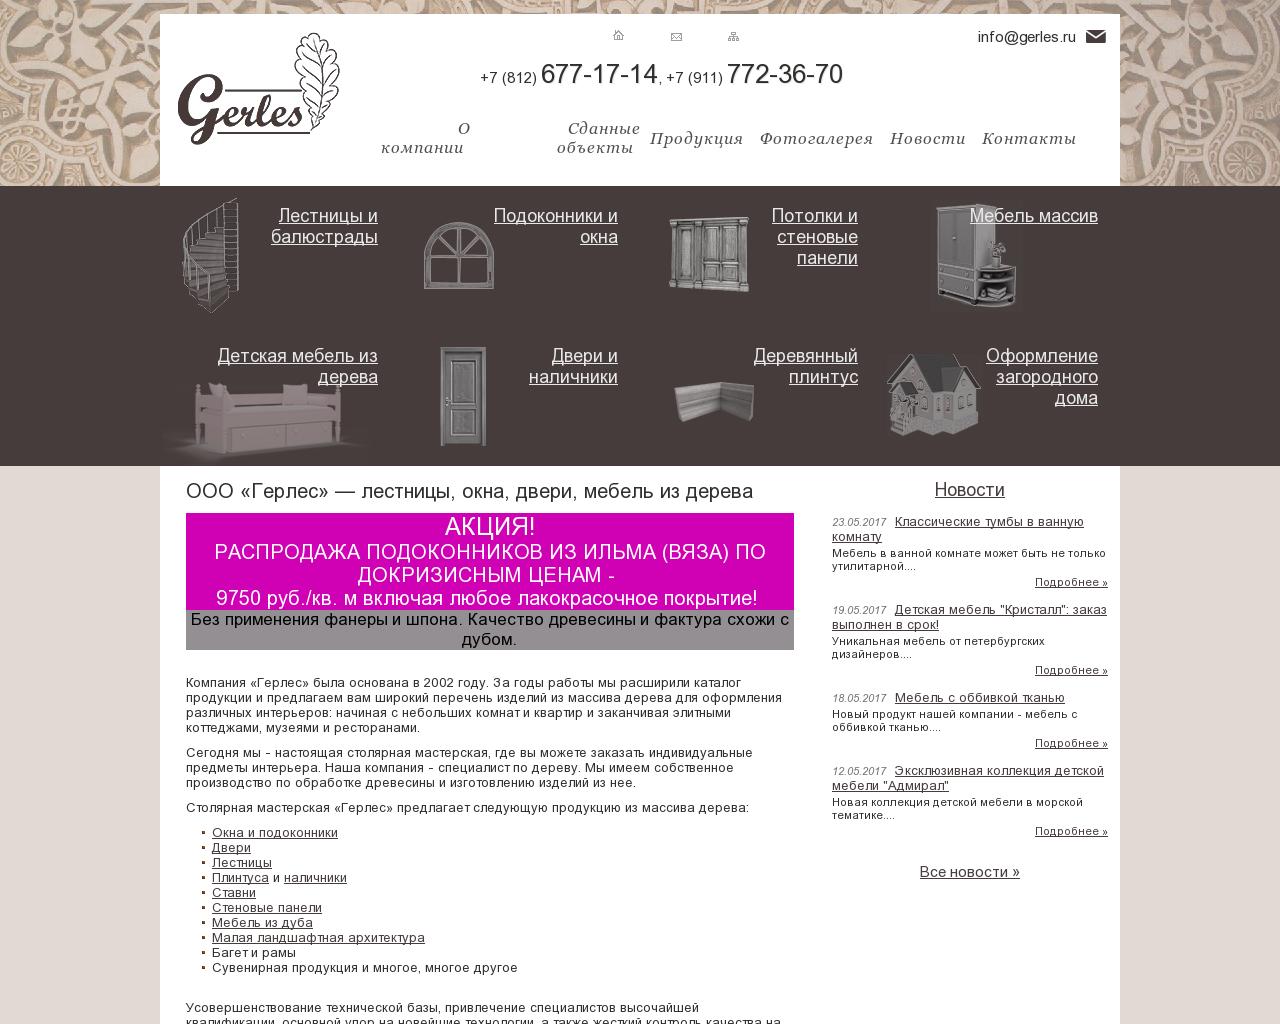 Изображение сайта gerles.ru в разрешении 1280x1024